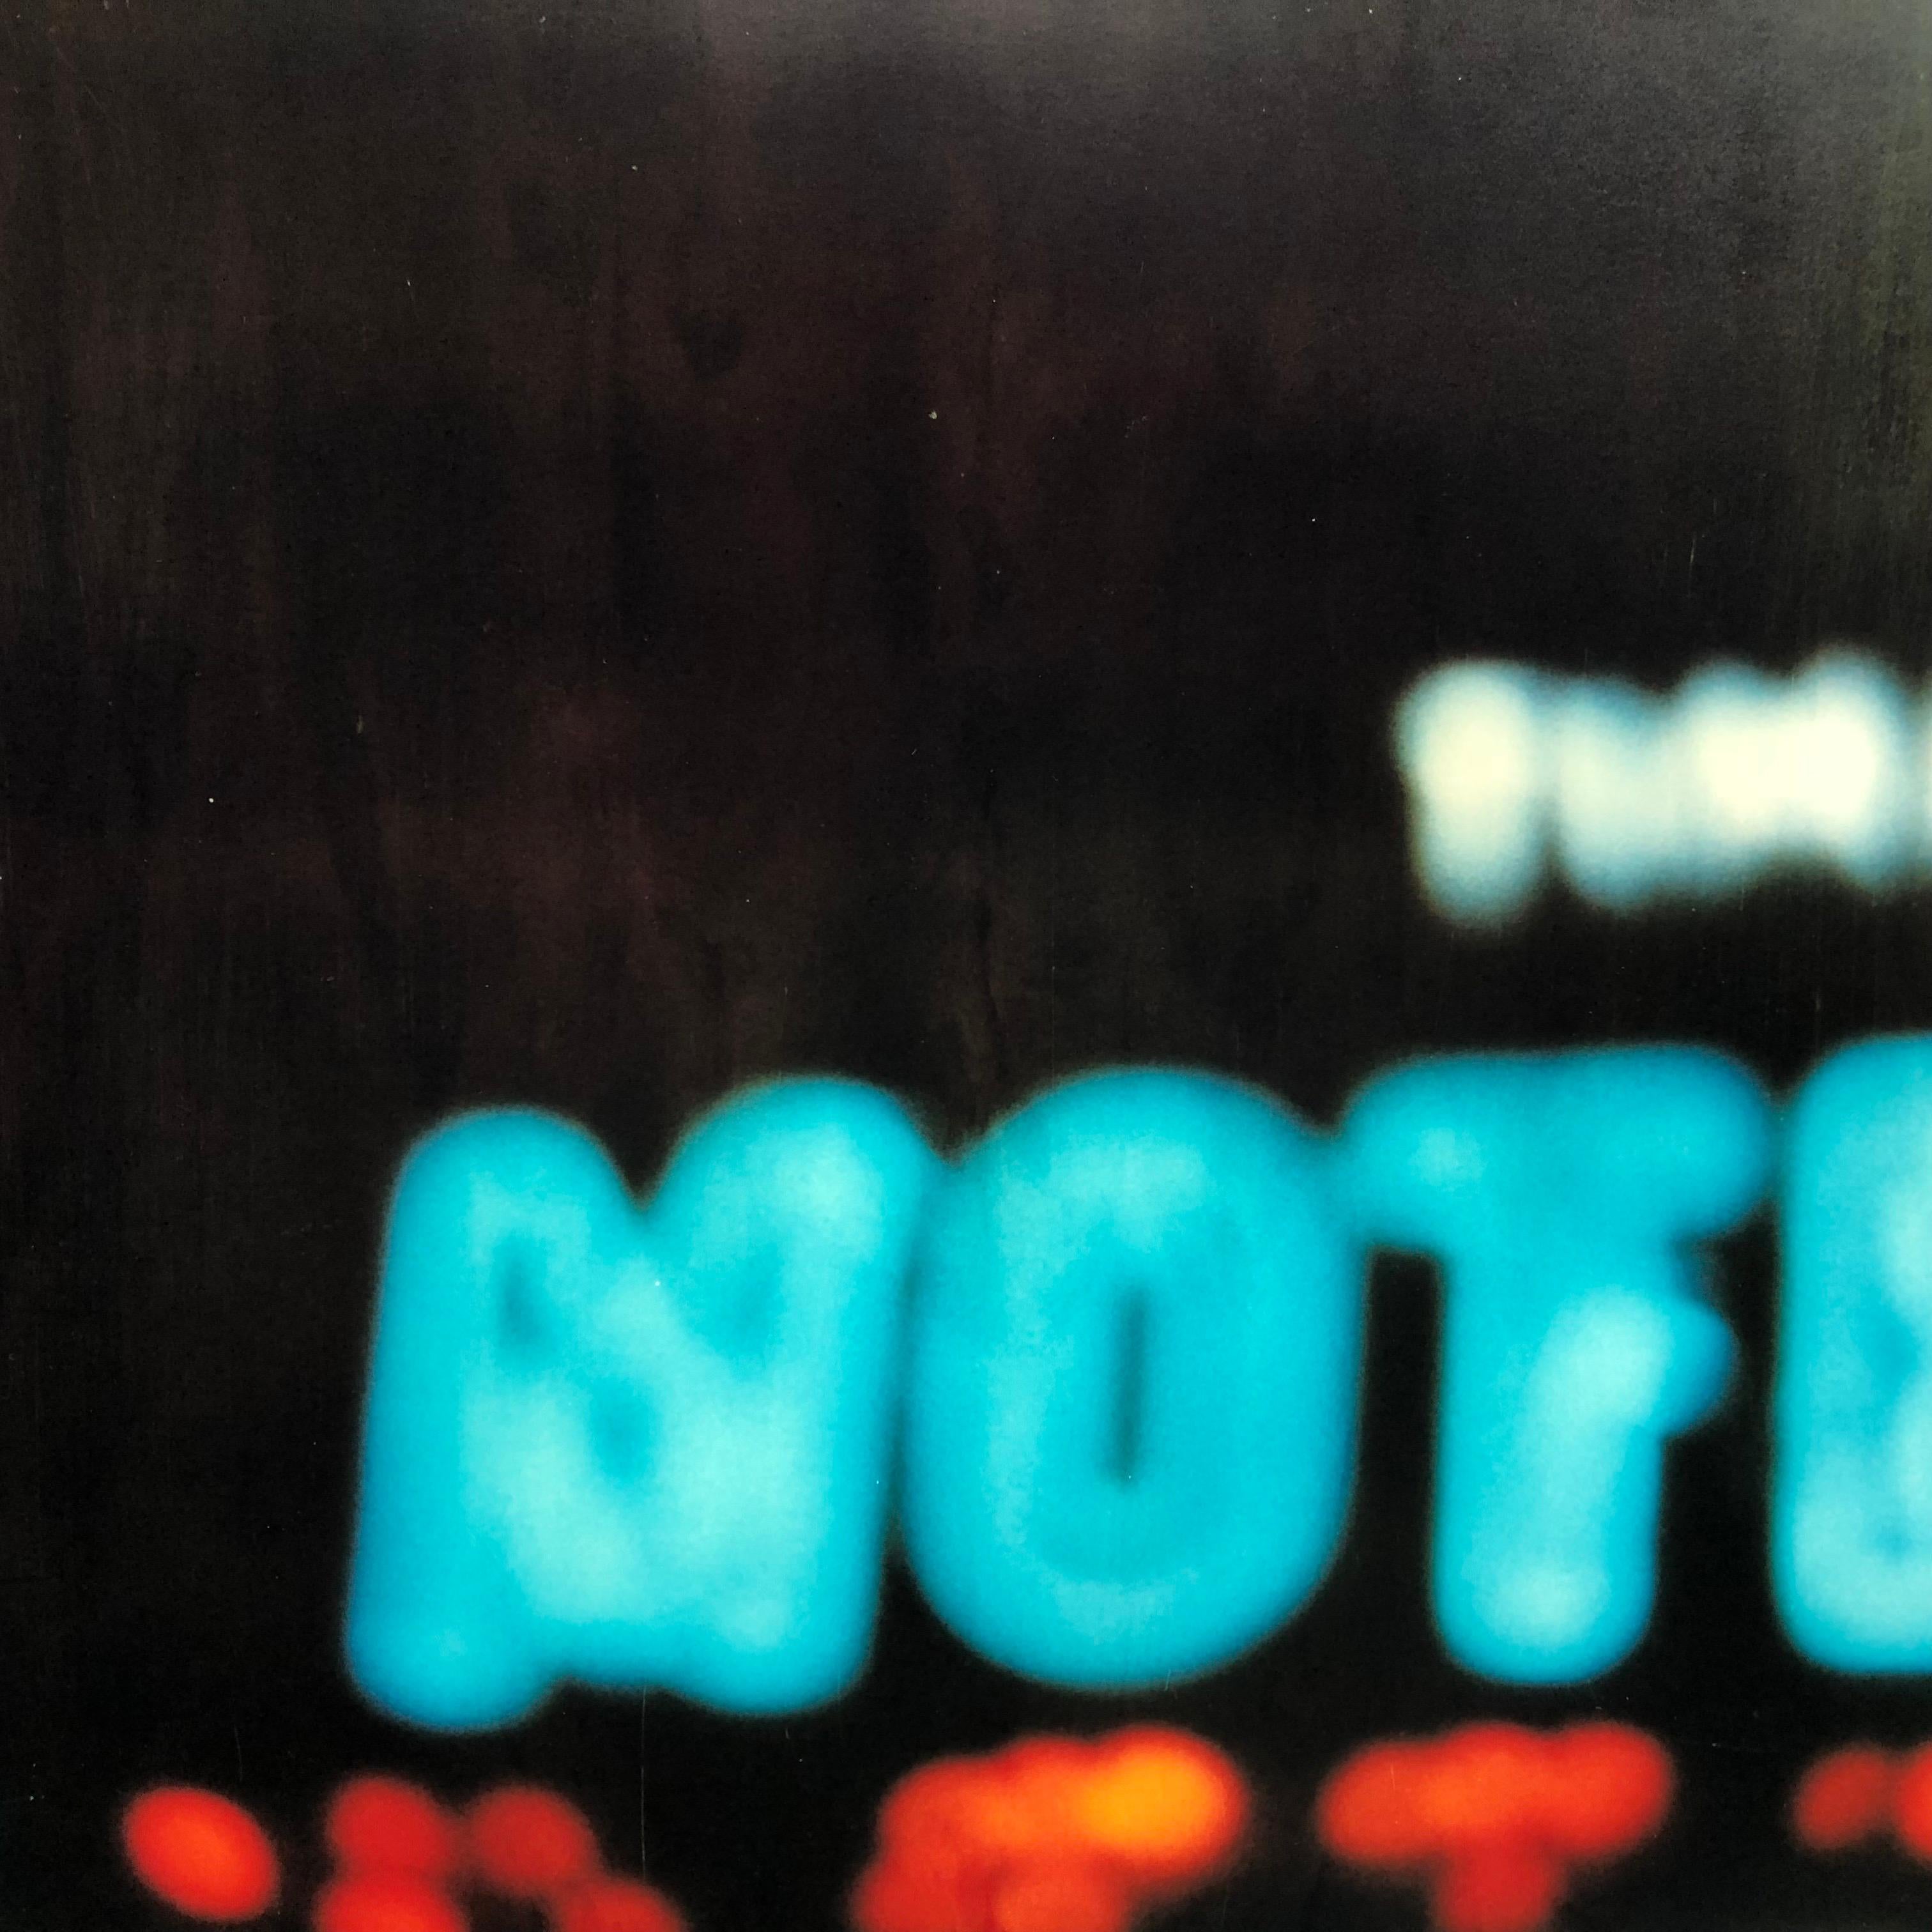 'Bates Motel' part 2 - Contemporary, Neon, Urban, expired, Polaroid, analog - Photograph by Stefanie Schneider